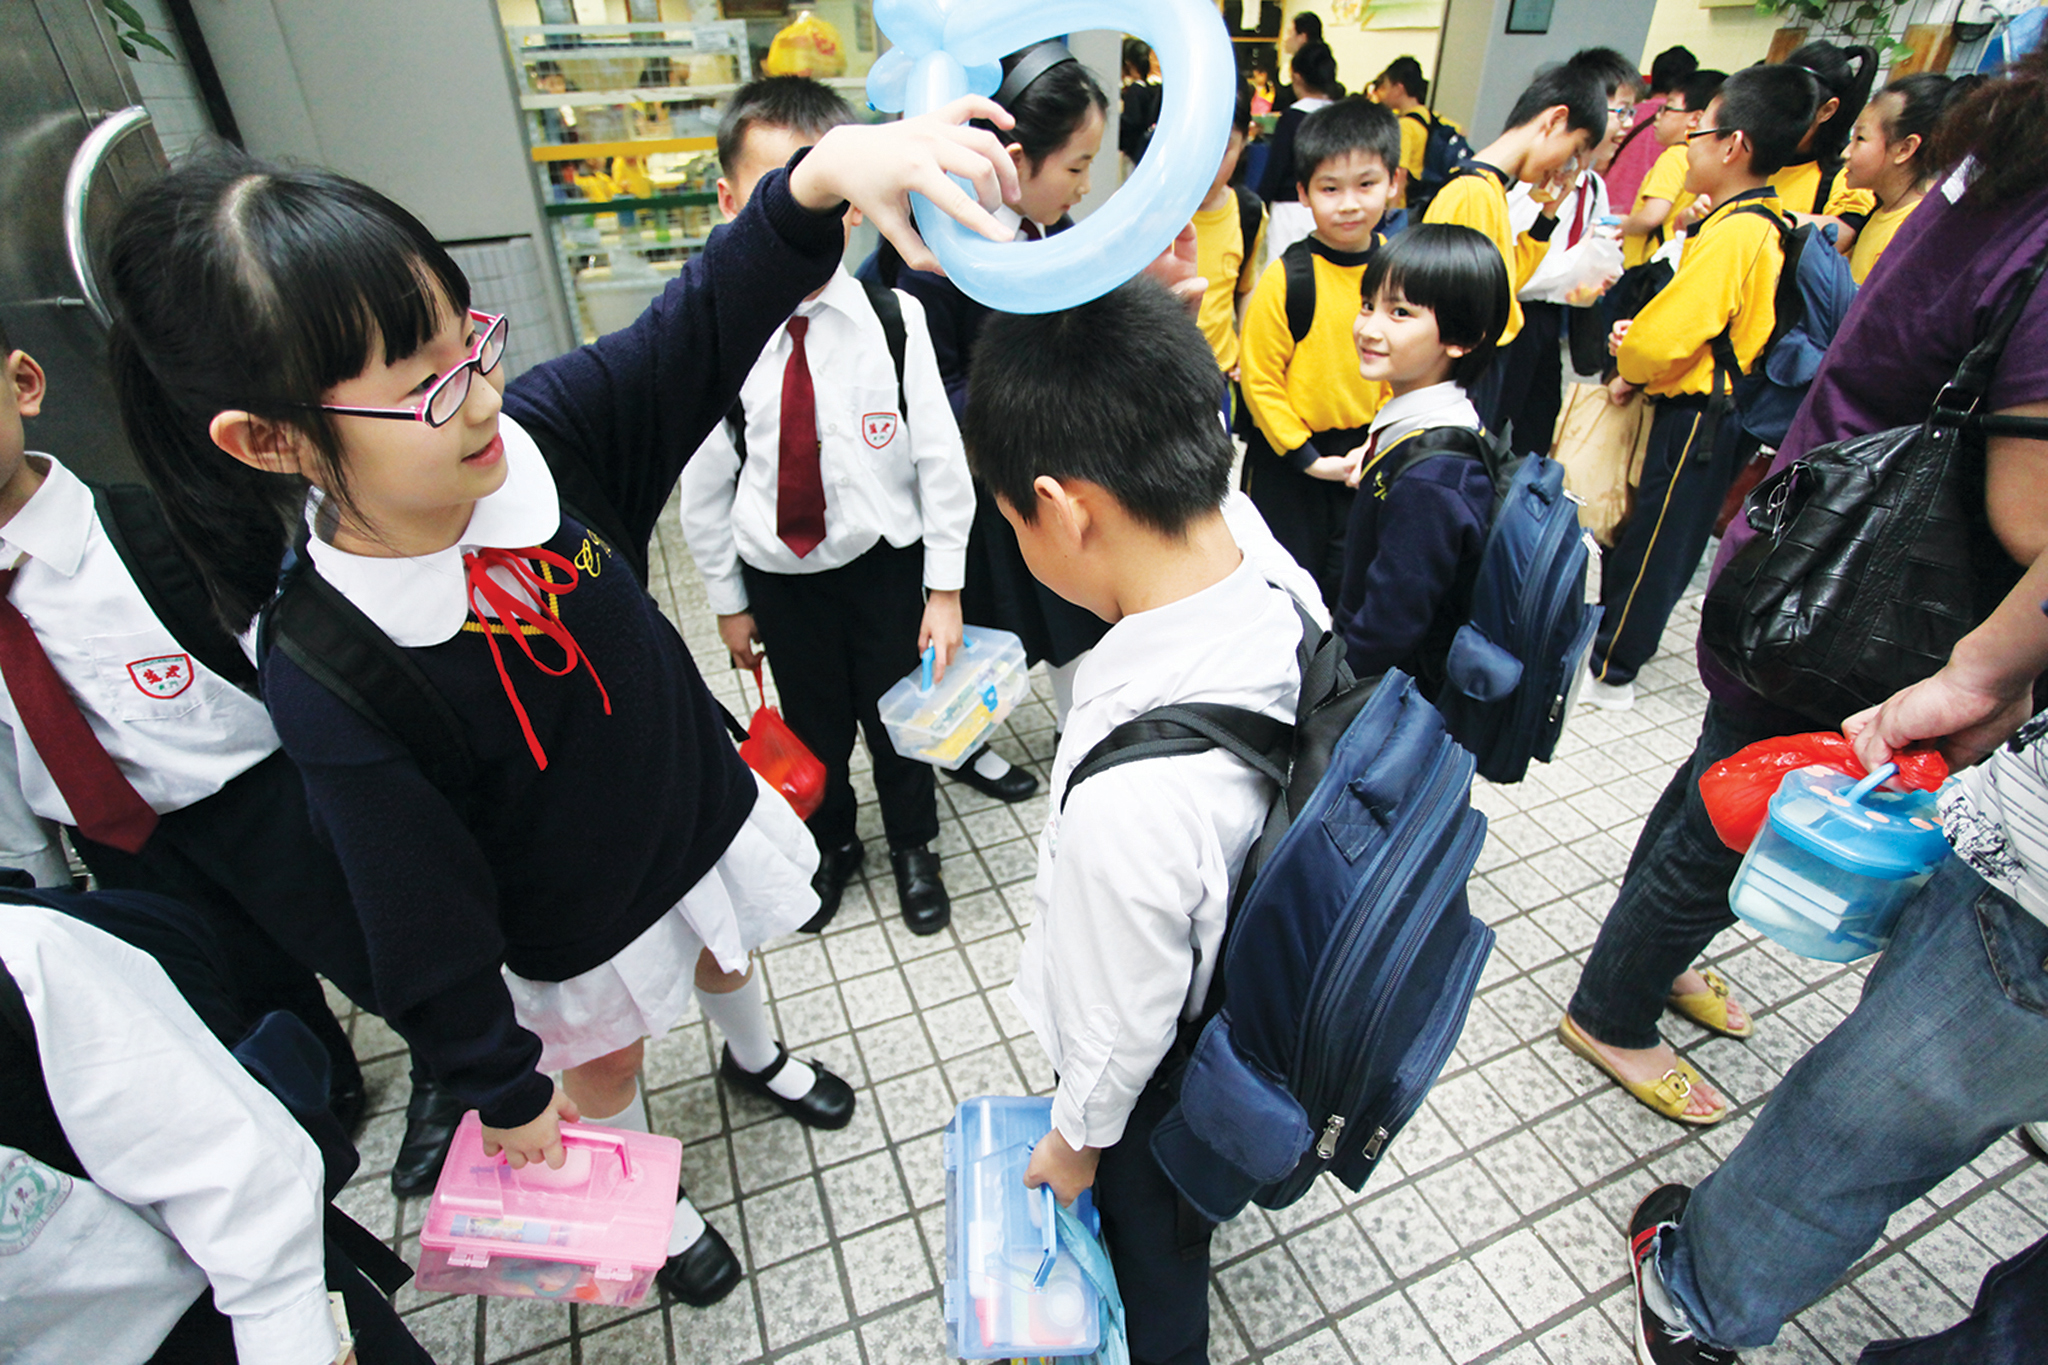 Associação Sinergia de Macau exige redução do peso das mochilas dos alunos